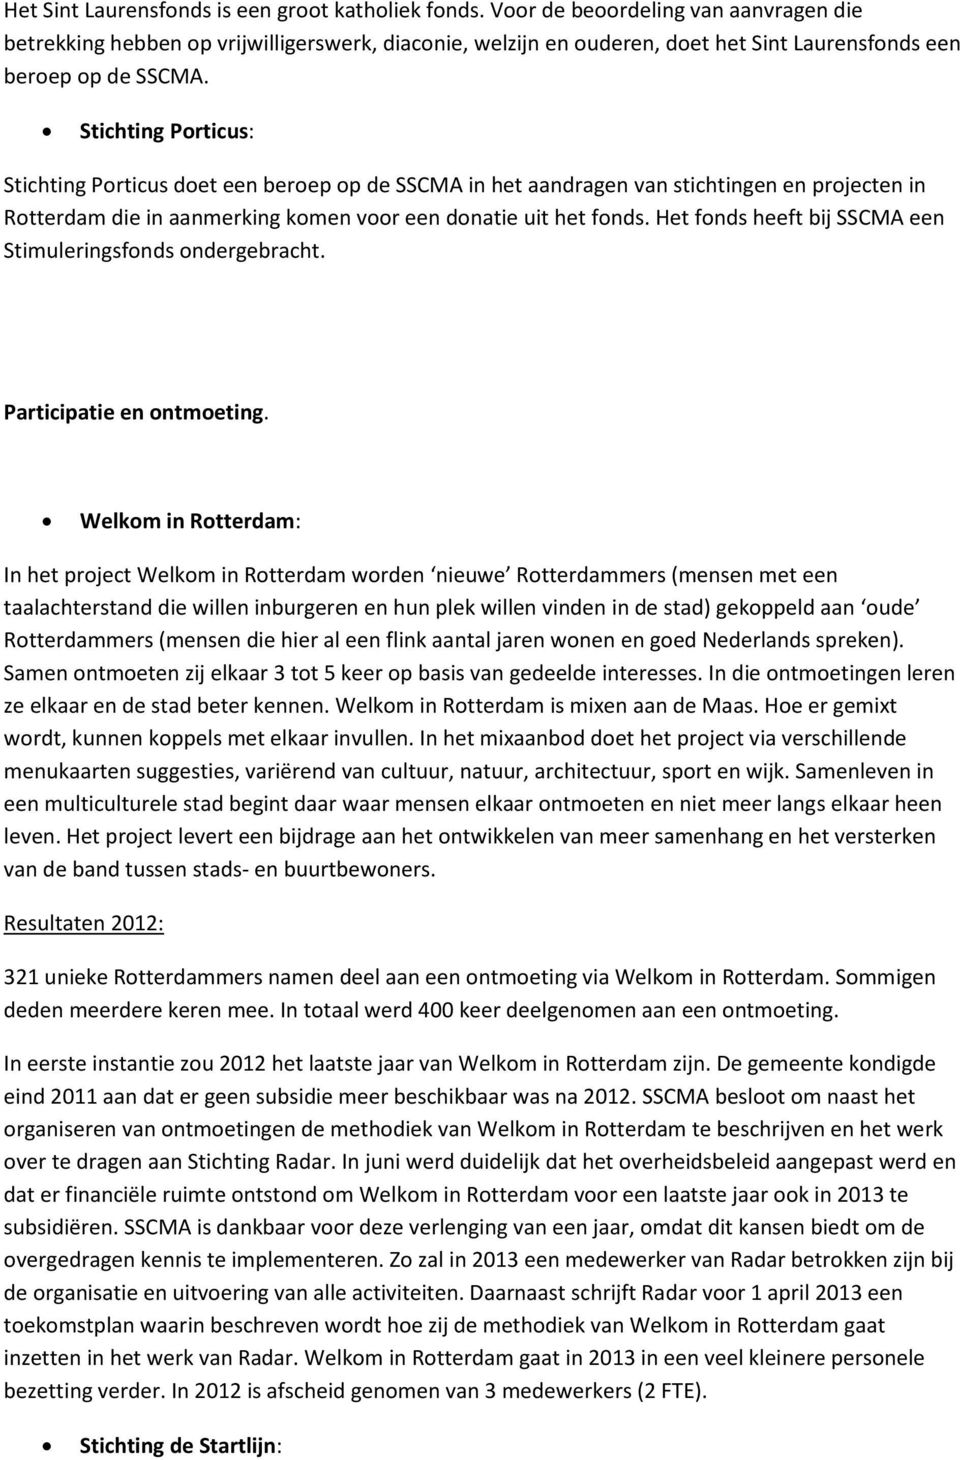 Stichting Porticus: Stichting Porticus doet een beroep op de SSCMA in het aandragen van stichtingen en projecten in Rotterdam die in aanmerking komen voor een donatie uit het fonds.